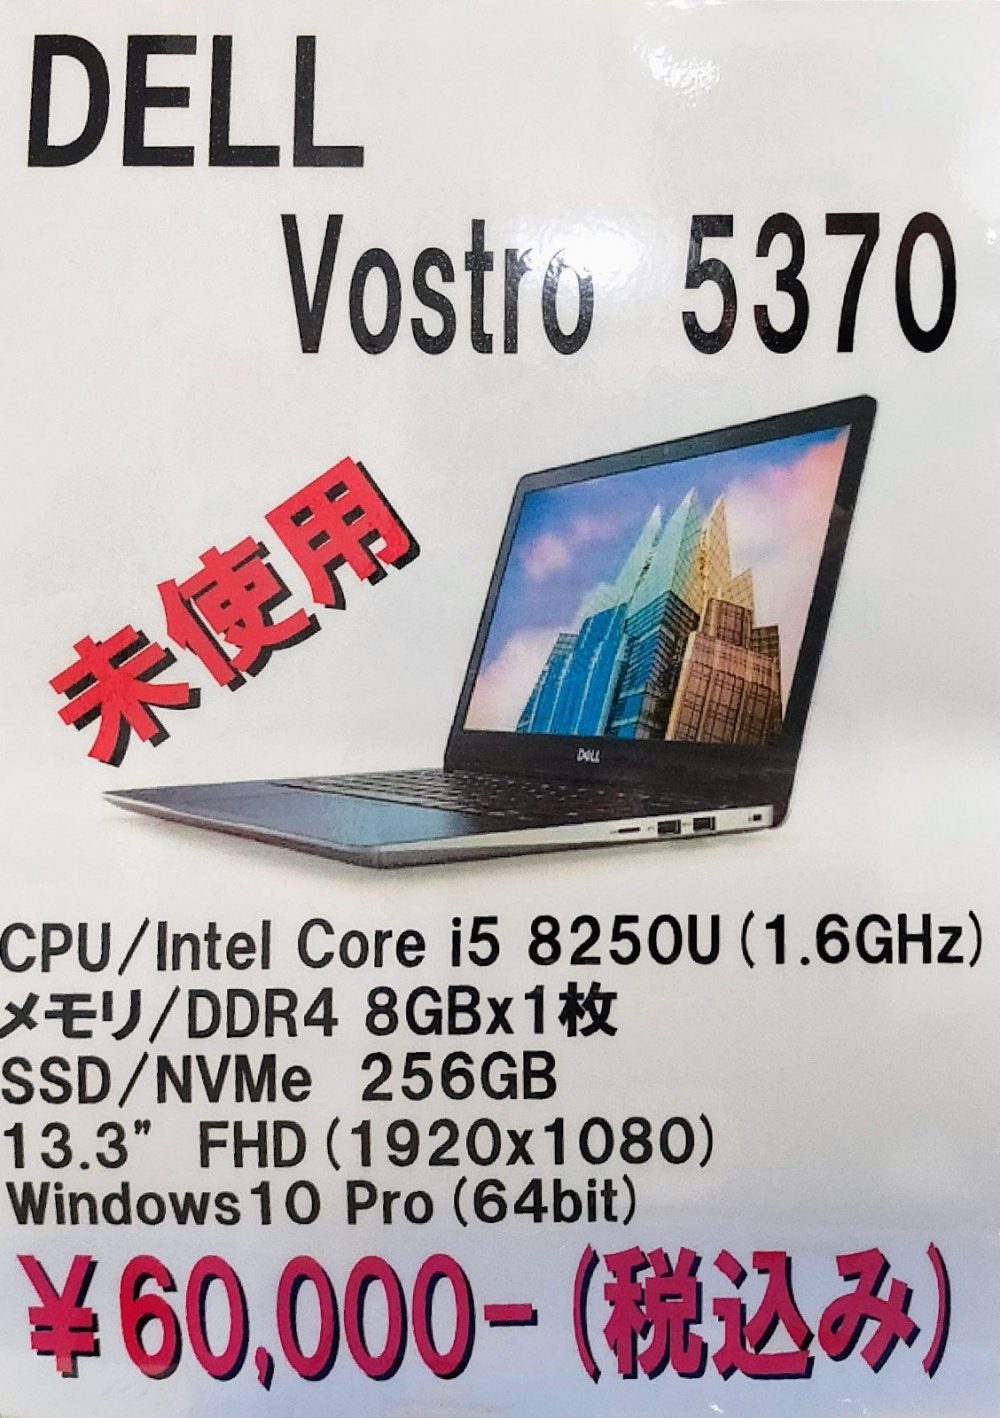 未使用品の第8世代Core i5/8GB/256GB/FullHD軽量ノートが税込60,000円 